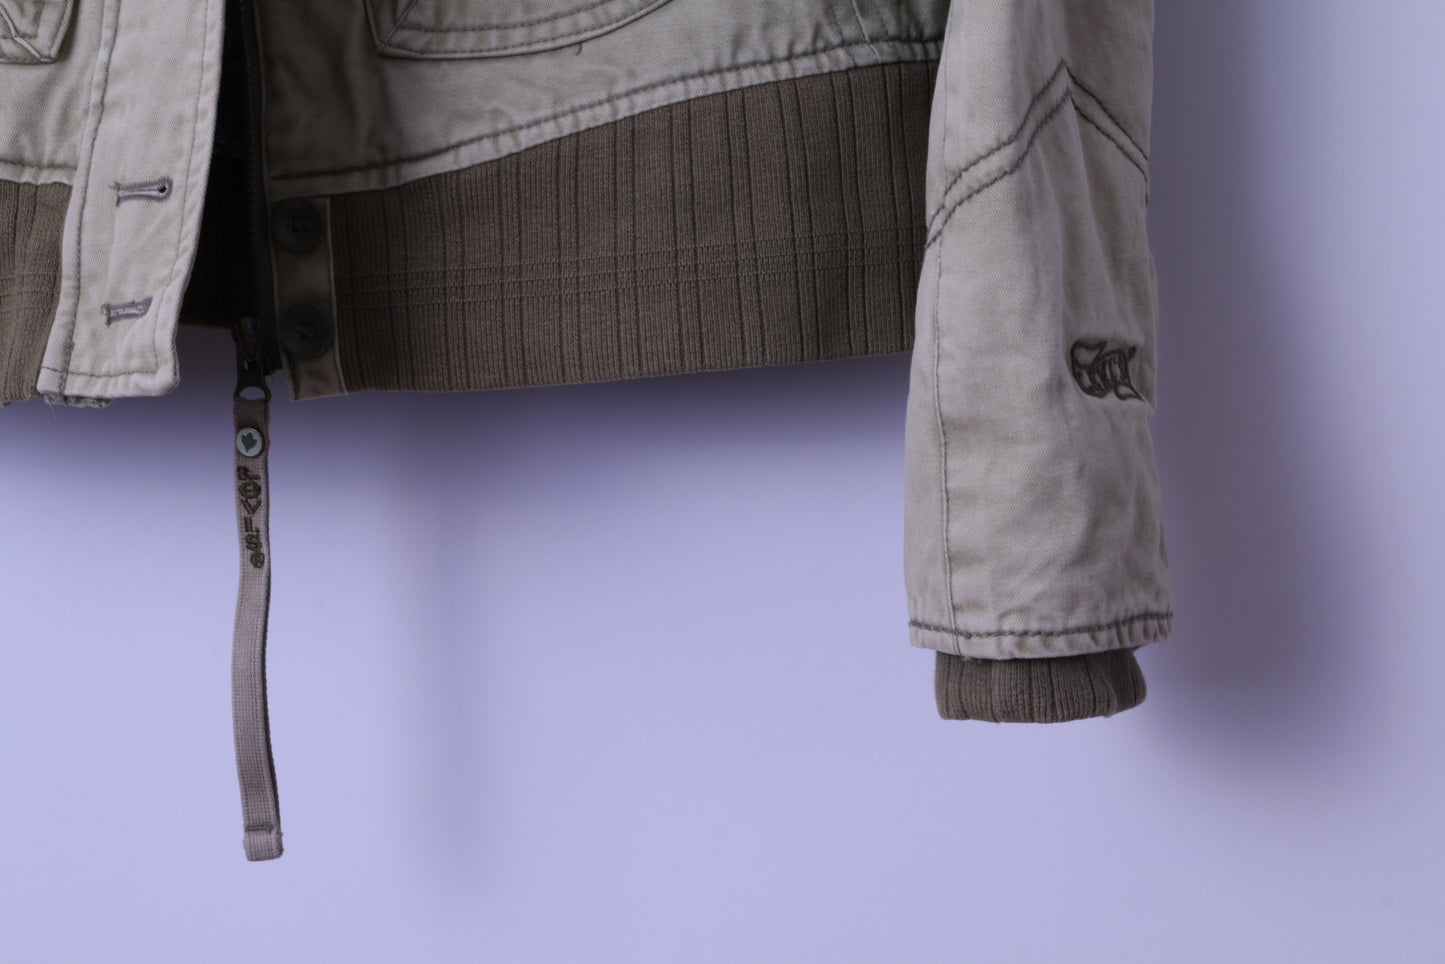 Levi's Womens M Jacket Bomber Khaki Cotton Paded Classic Full Zipper Top